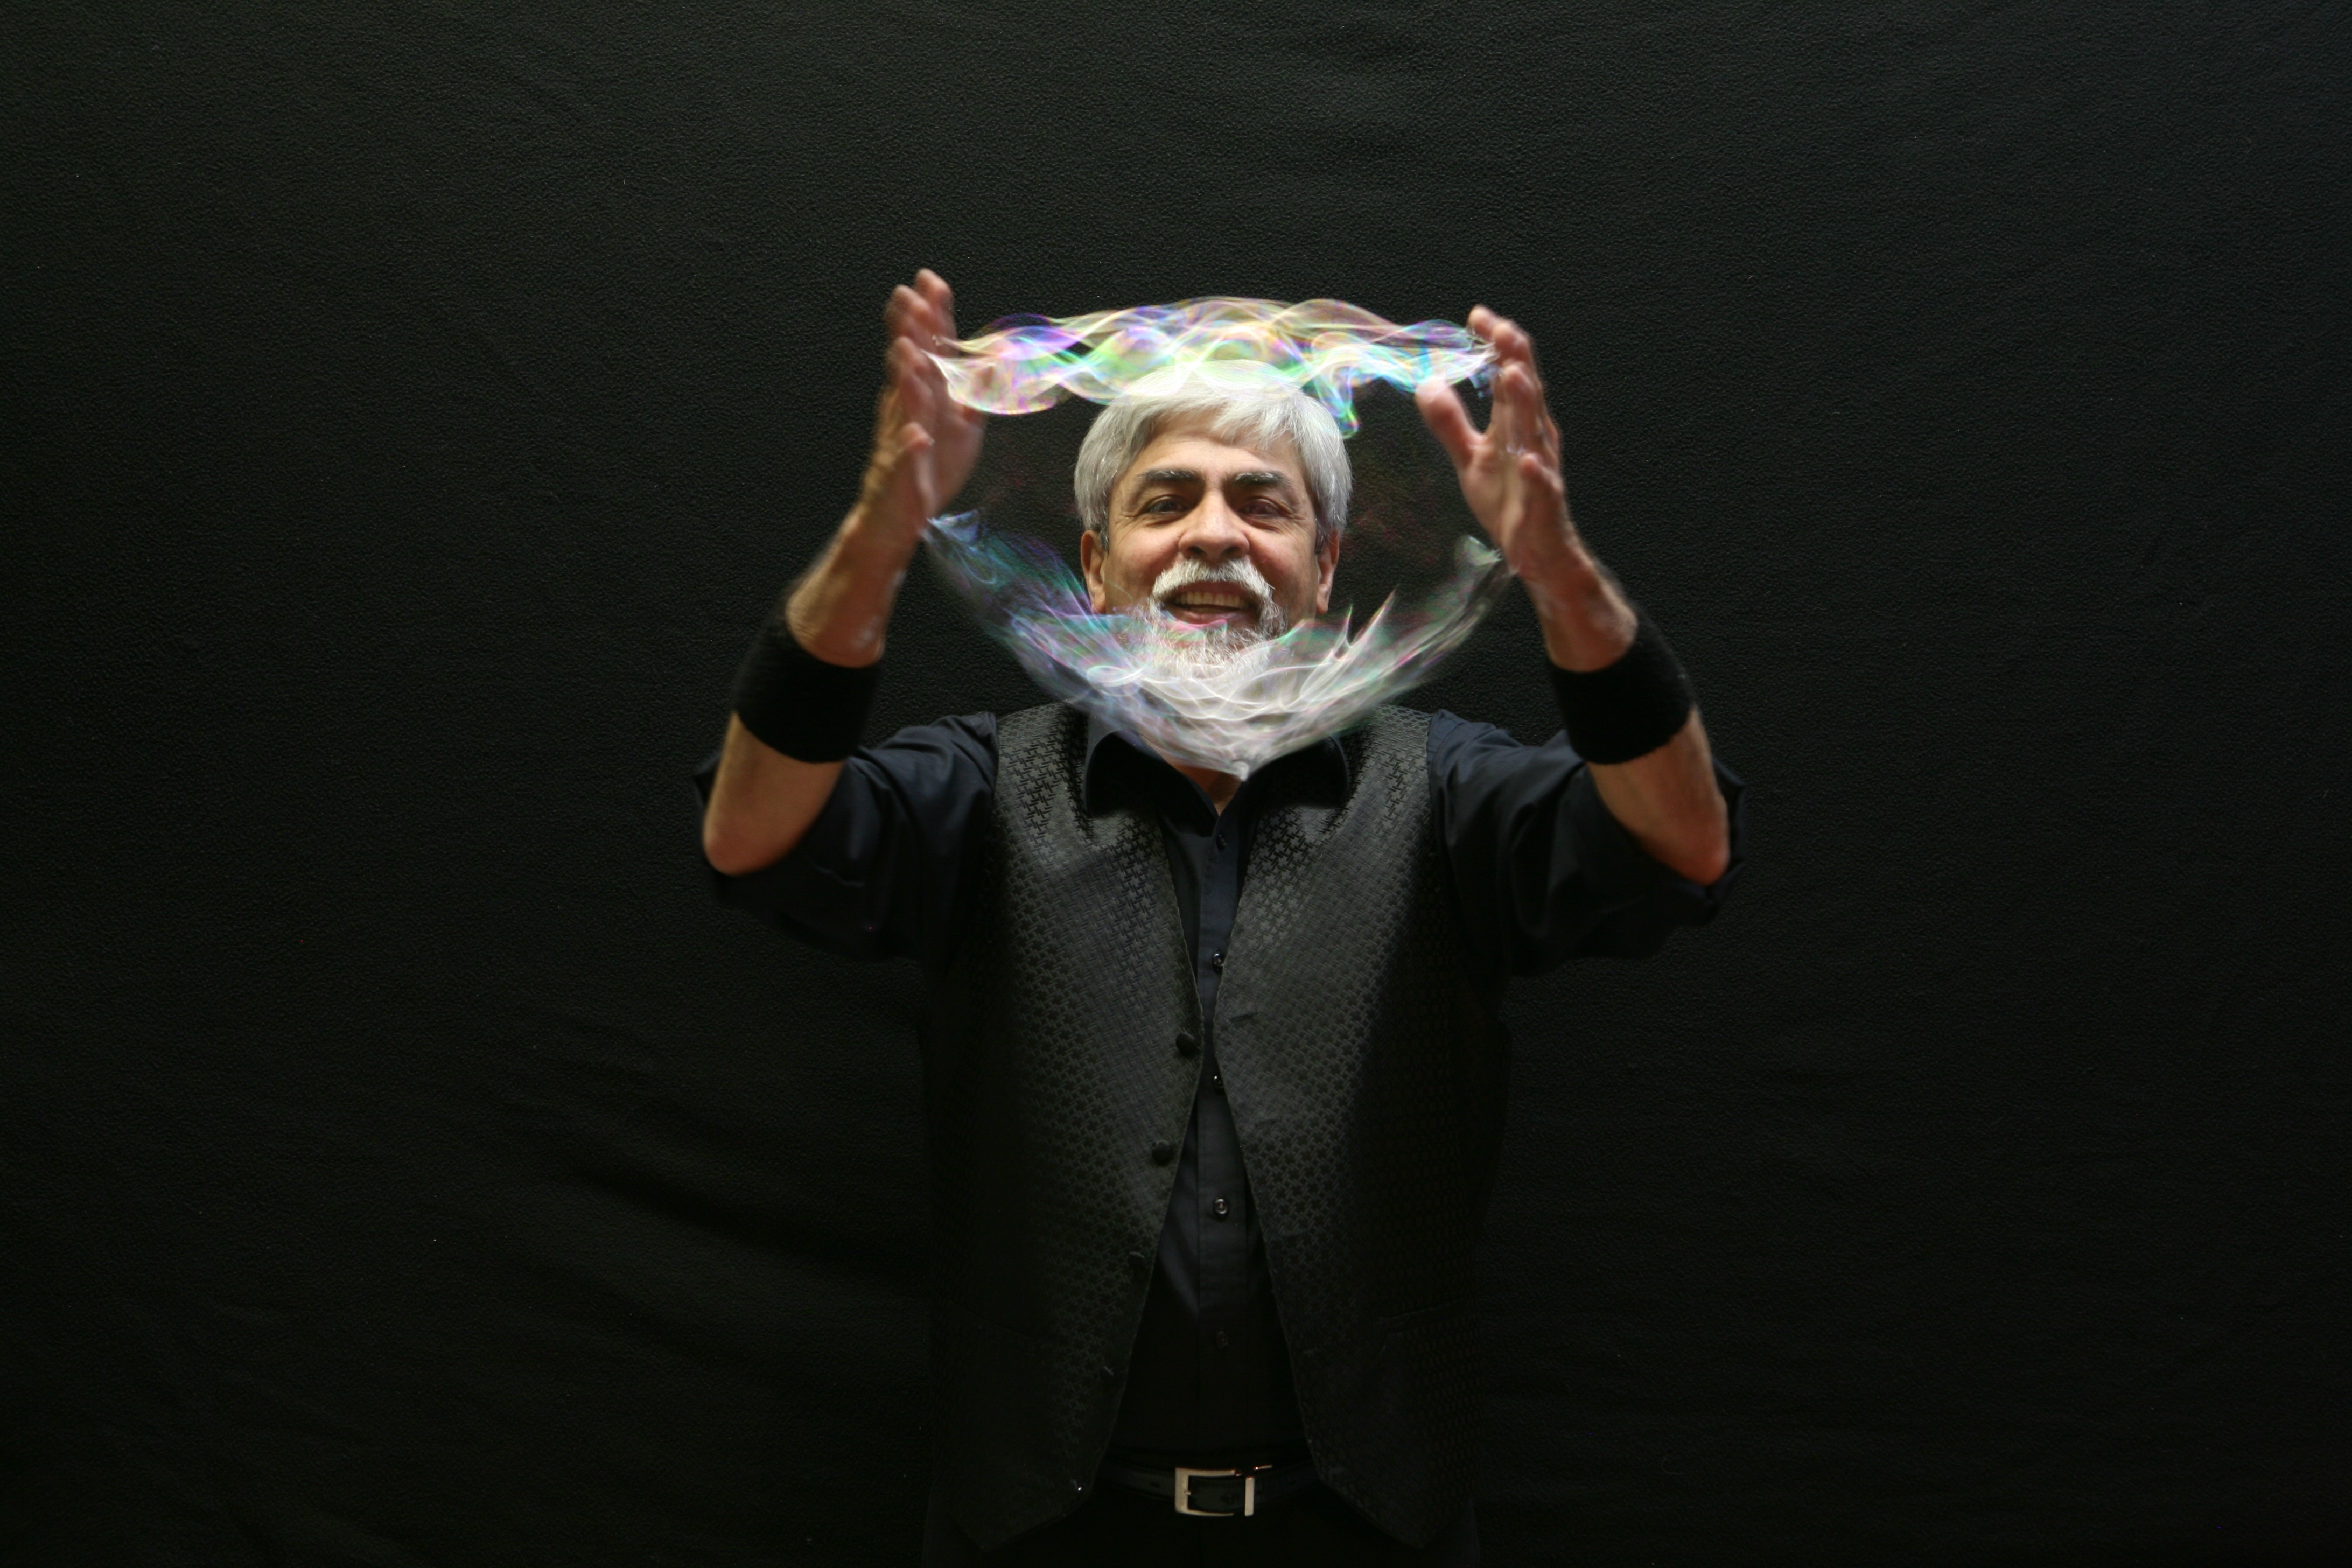 Ben's Bubble Show Promo Image, man holding bubble